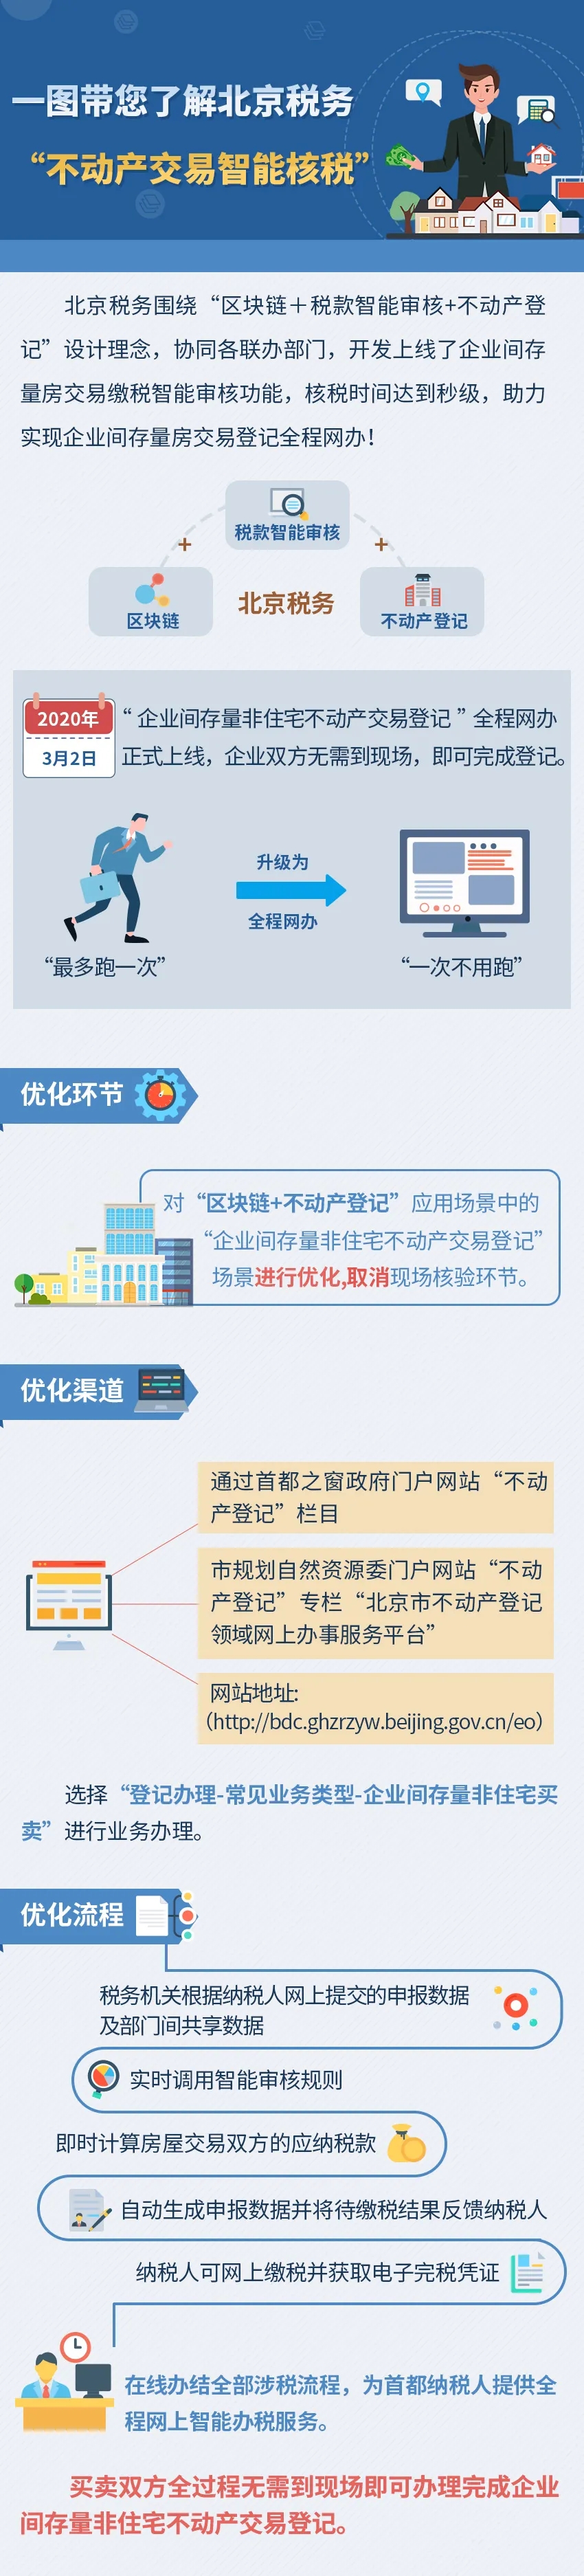 一圖帶您了解北京稅務“不動産交易智慧核稅”